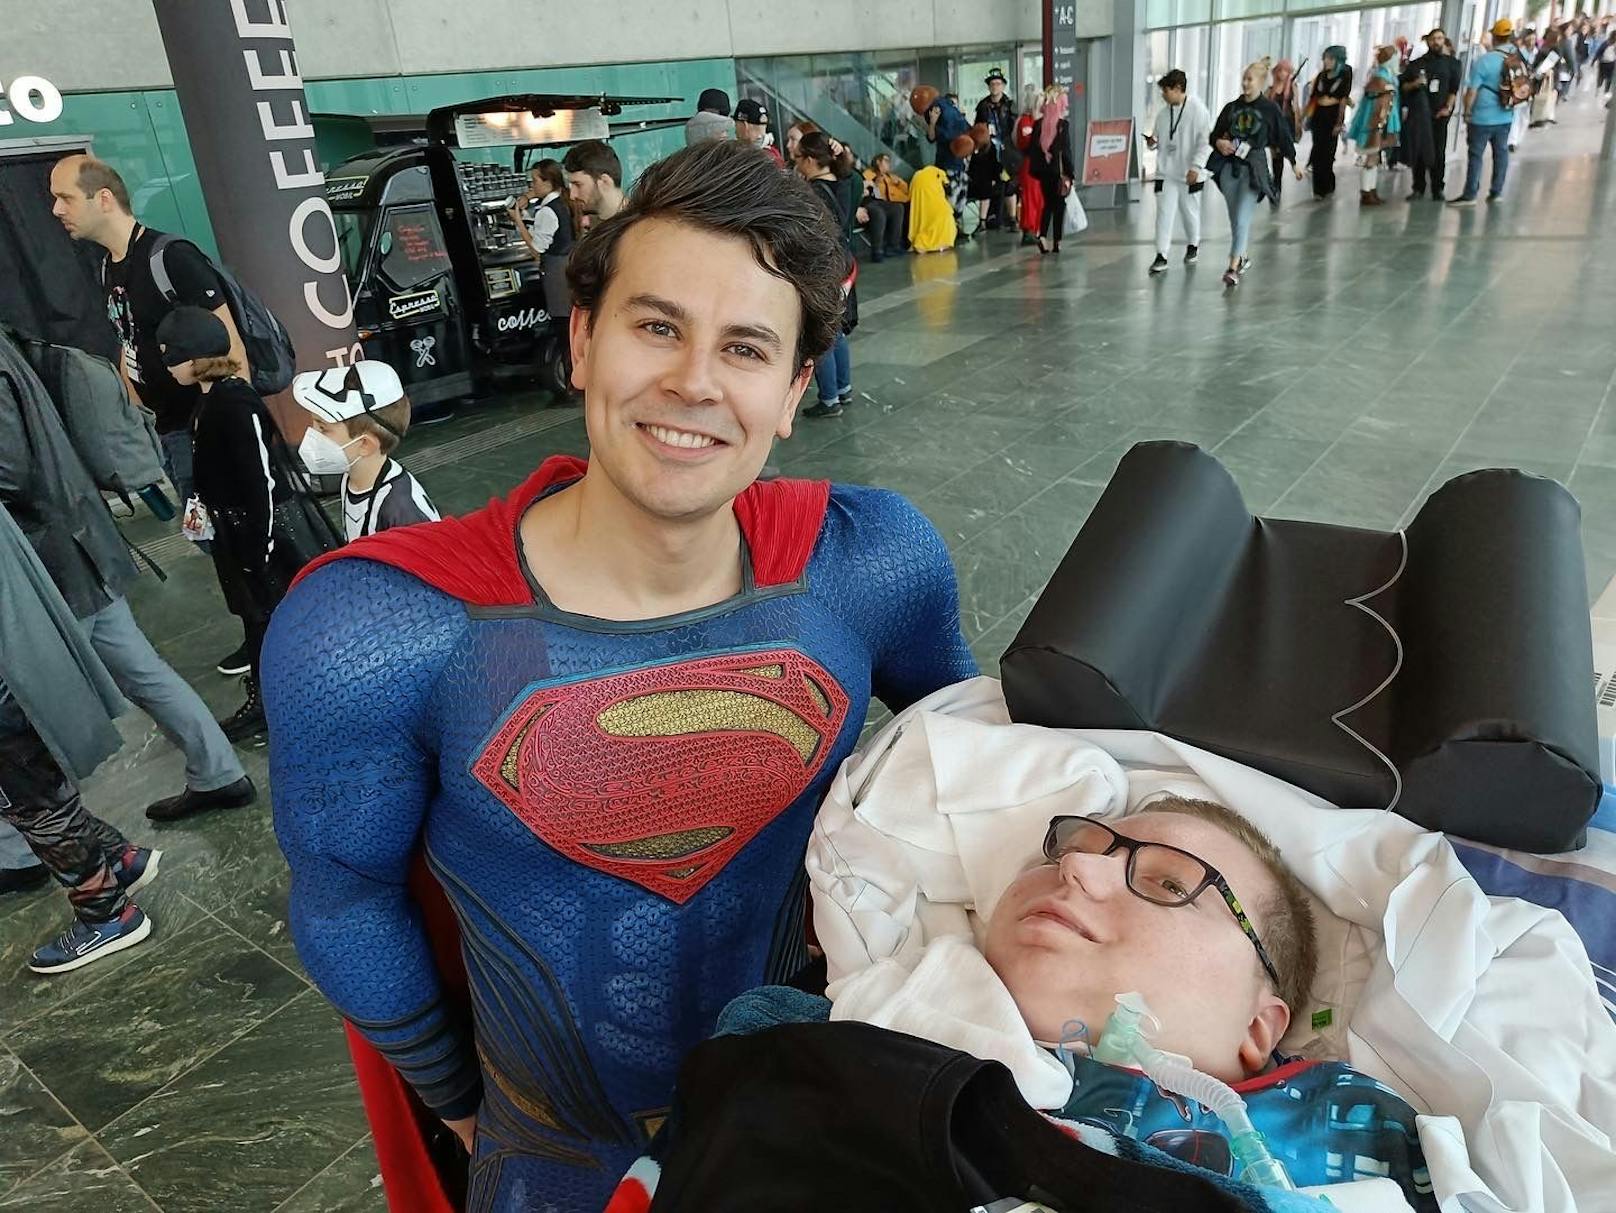 Filip traf sein Idol "Superman". Für den 15-jährigen war es einer der schönsten Tage seines Lebens.